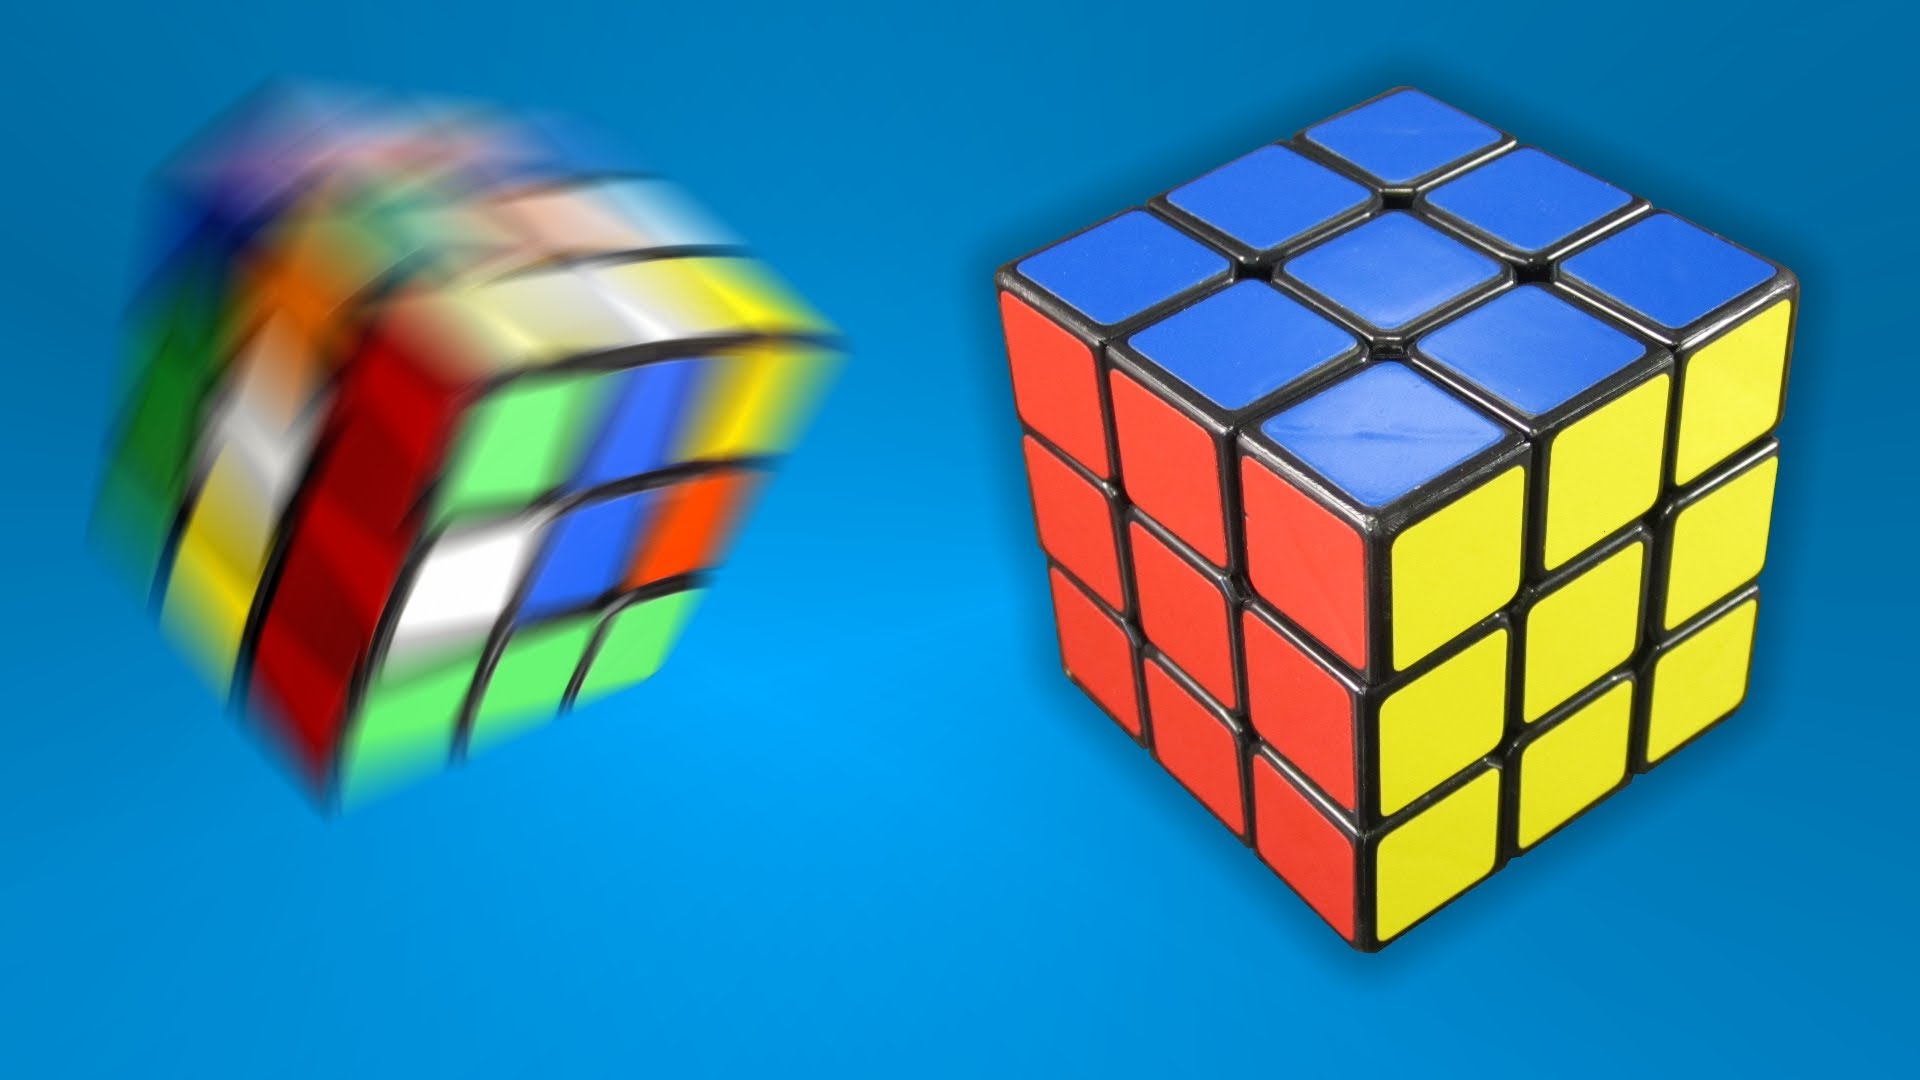 Rubik’s Cube wallpapers.